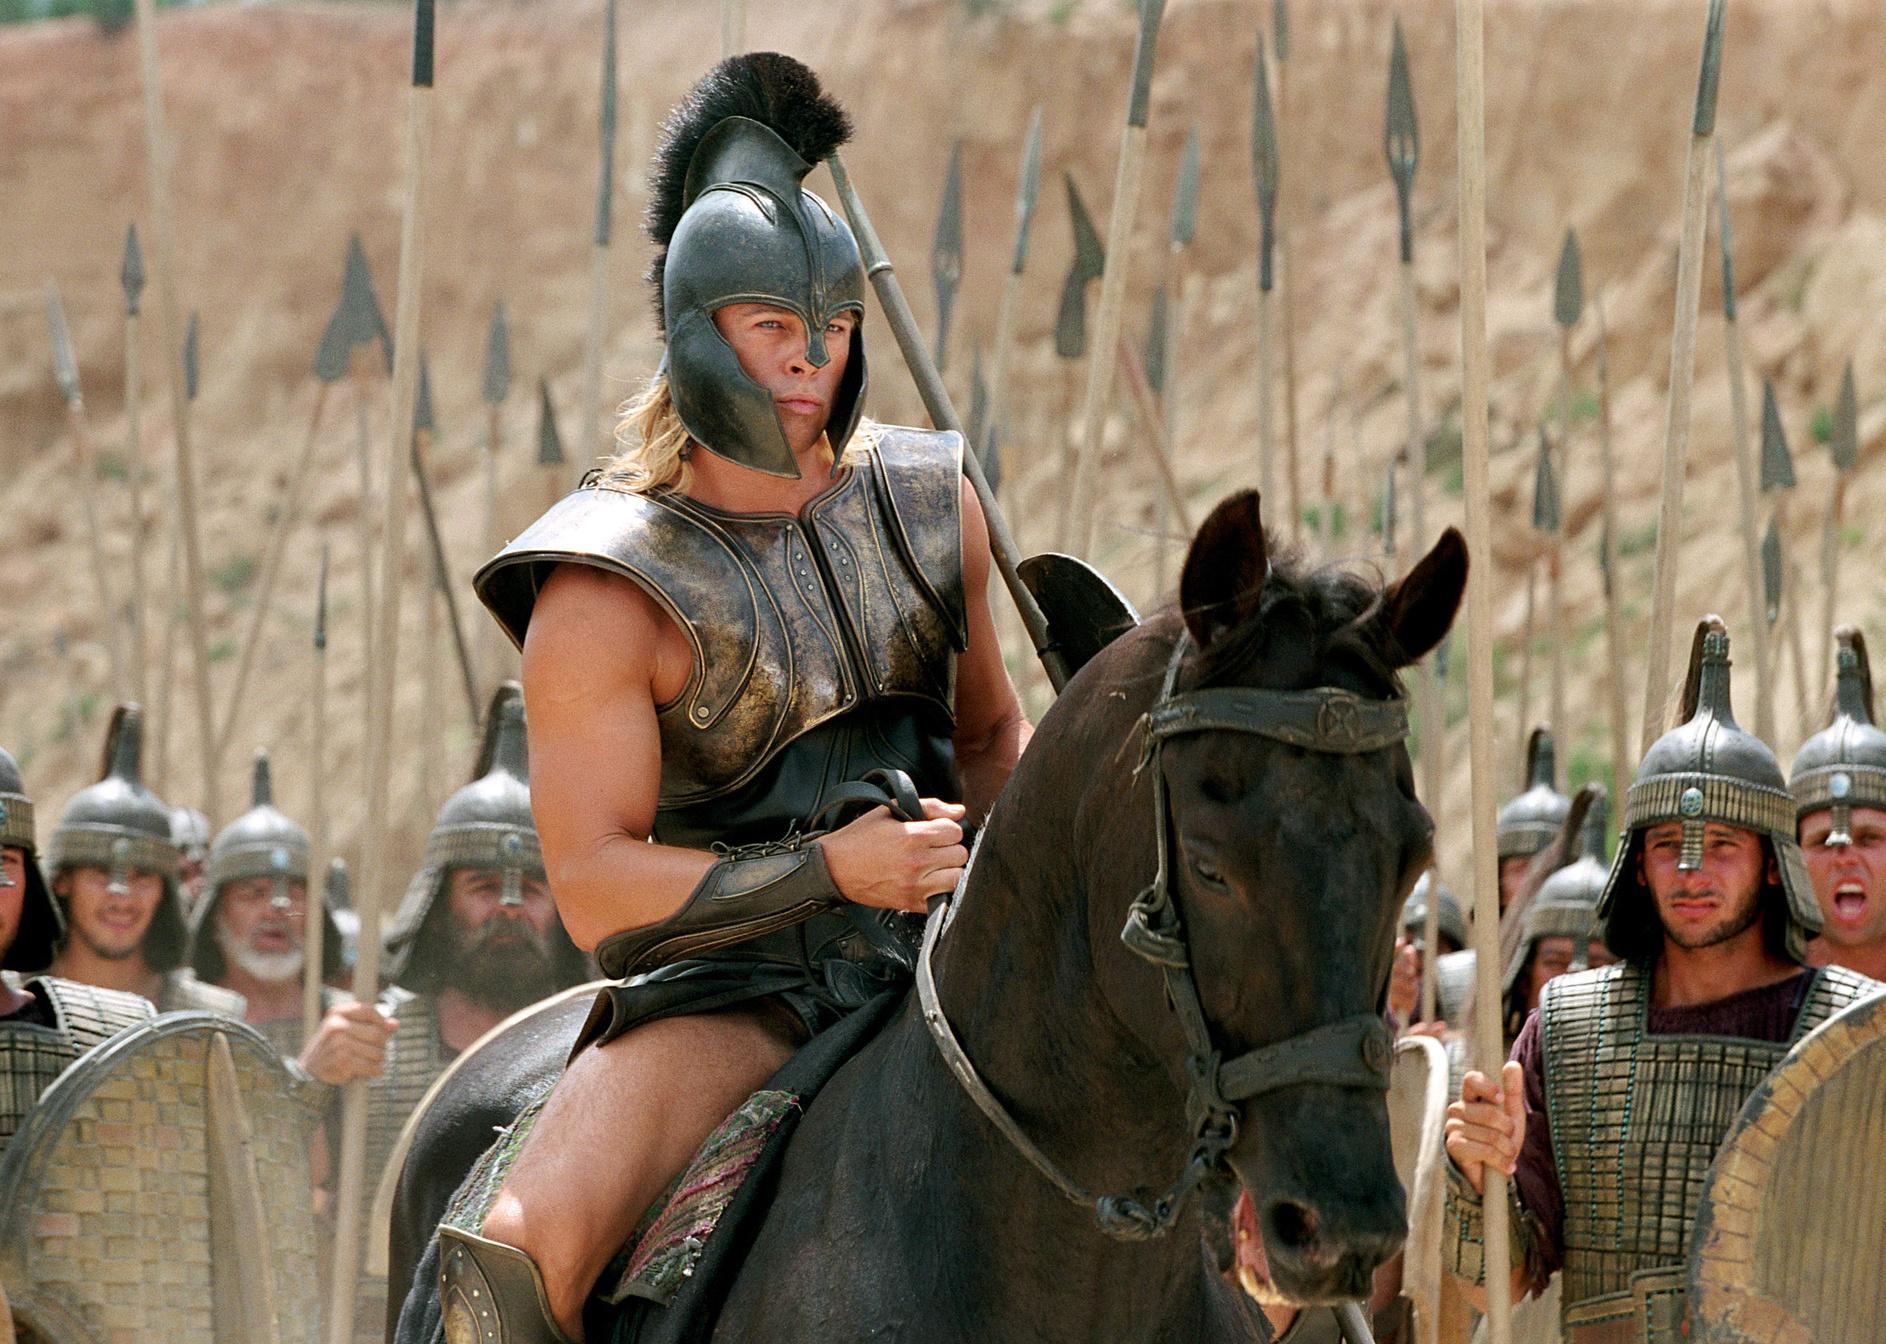 Brad Pitt dressed in Trojan armor on horseback.